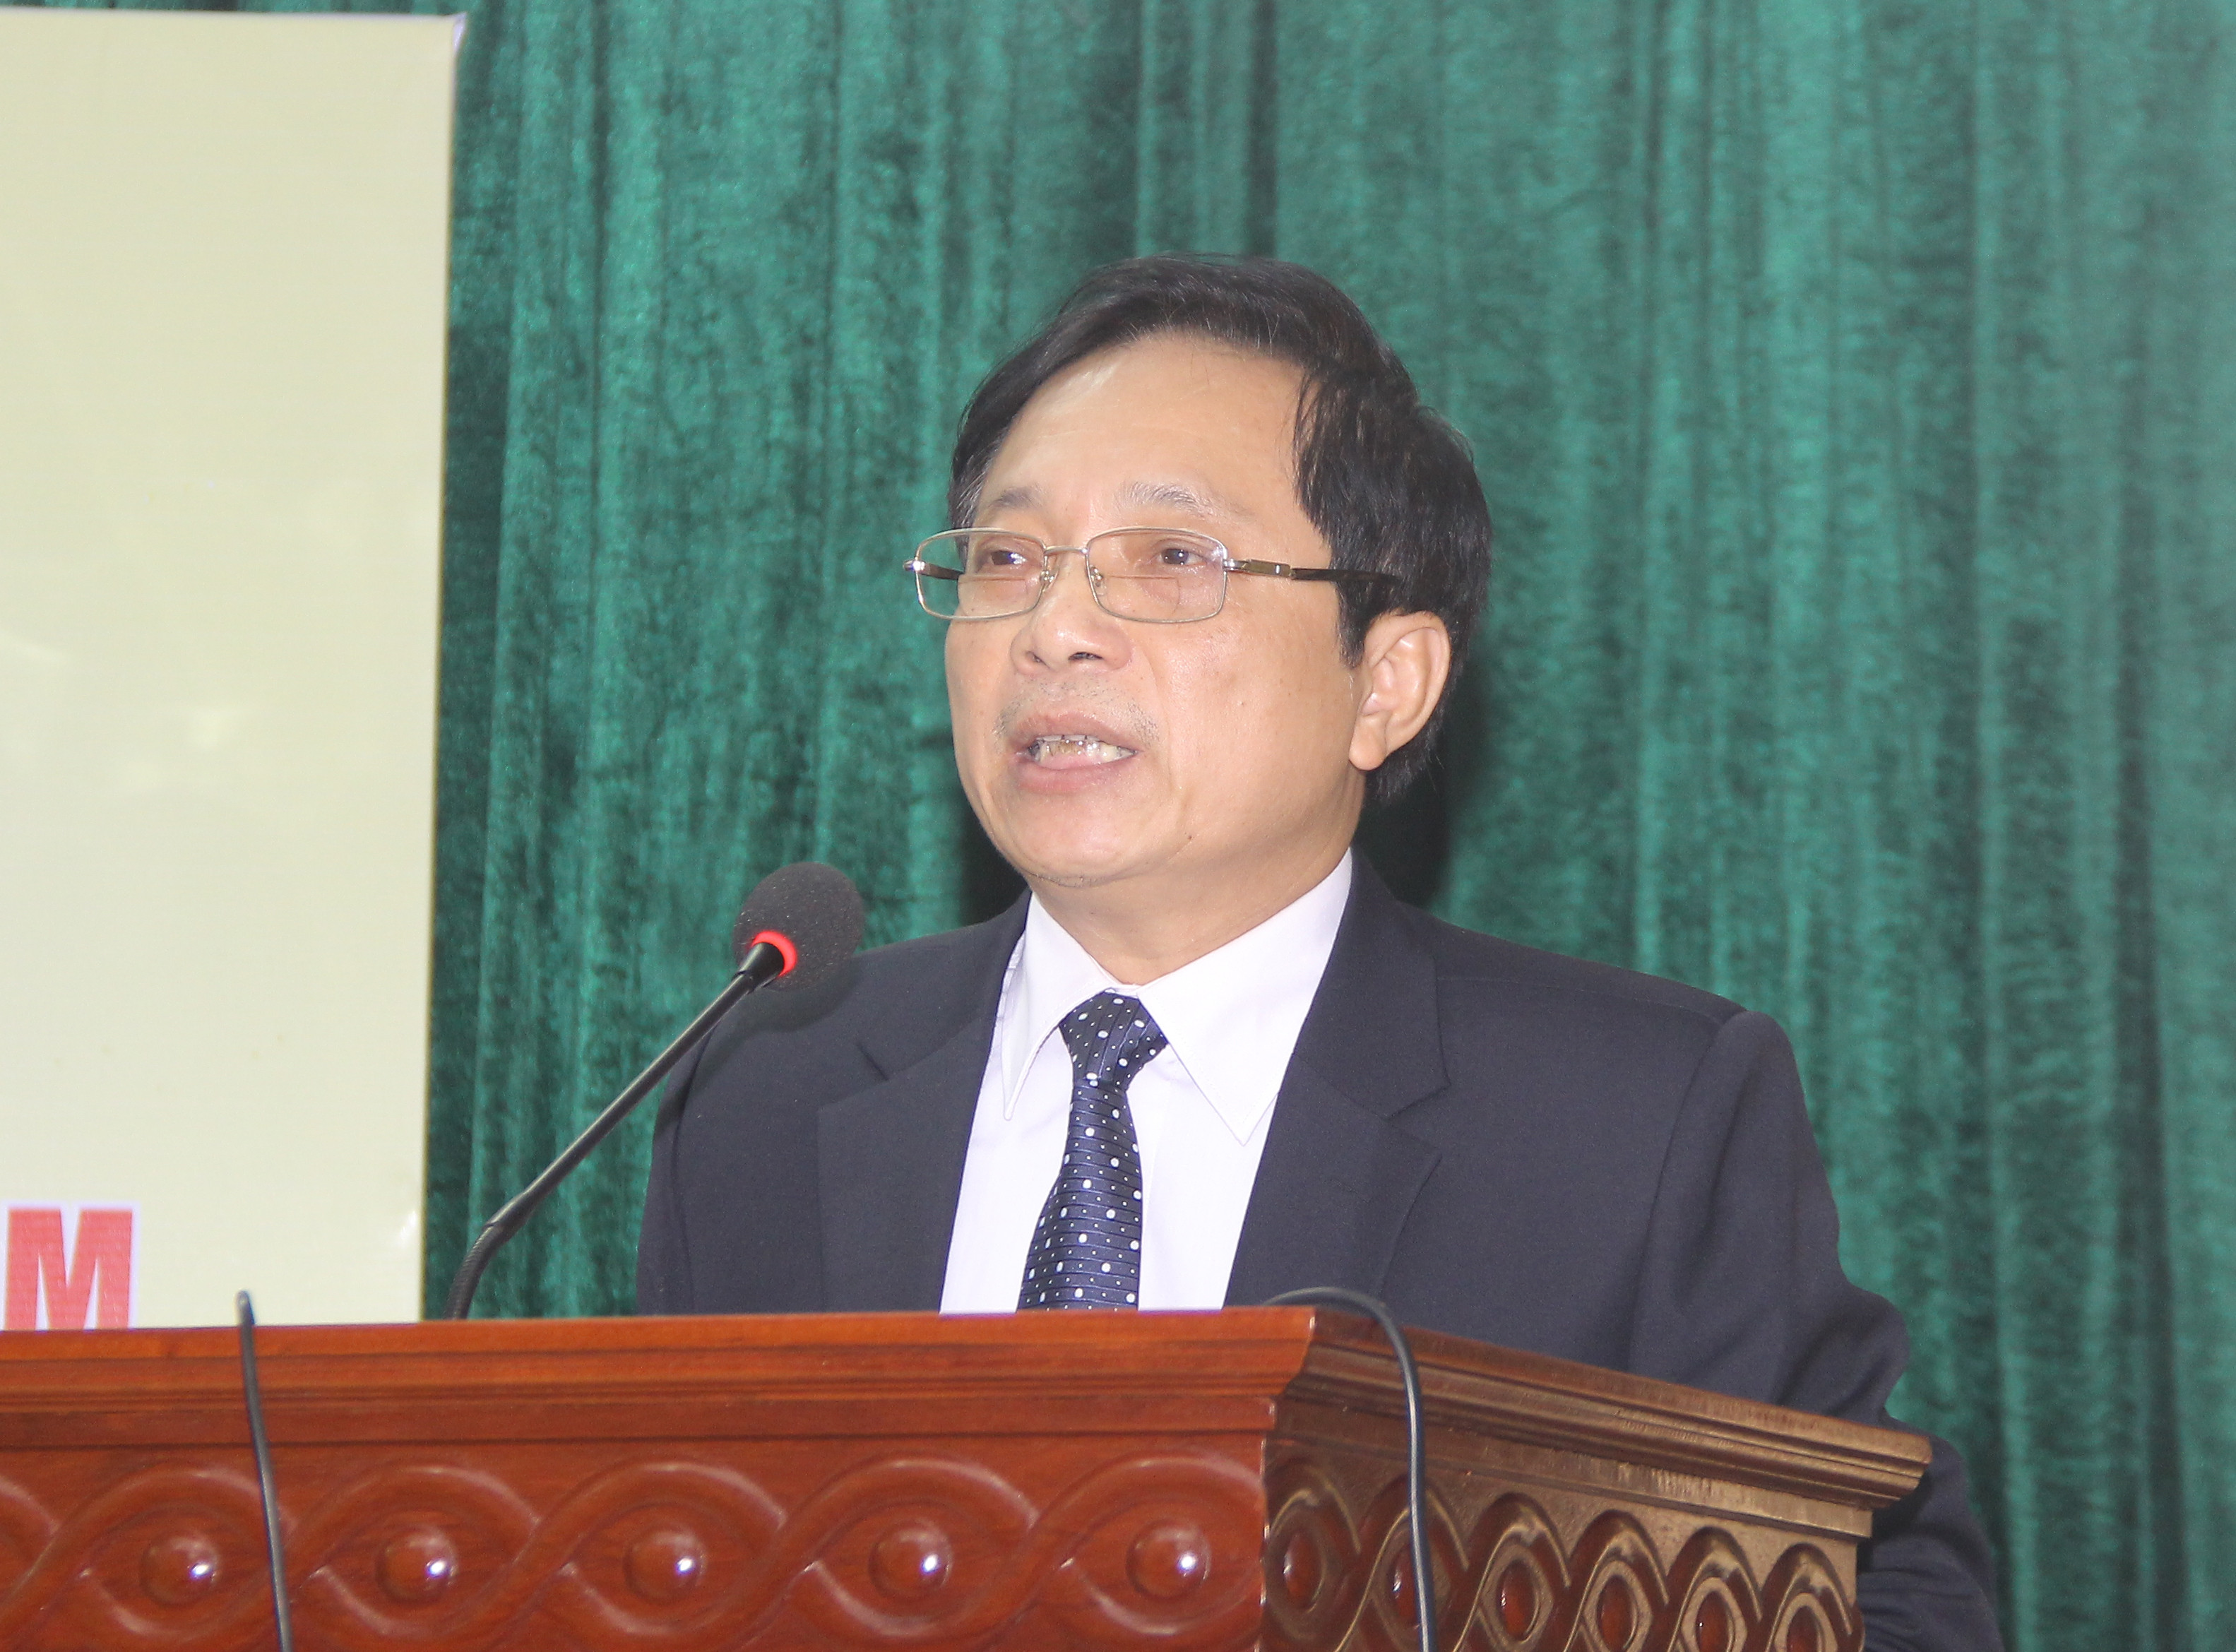 Đồng chí. Trương Văn Hởi - Phó Chr tịch MTTQ tỉnh Quangtr Bìn